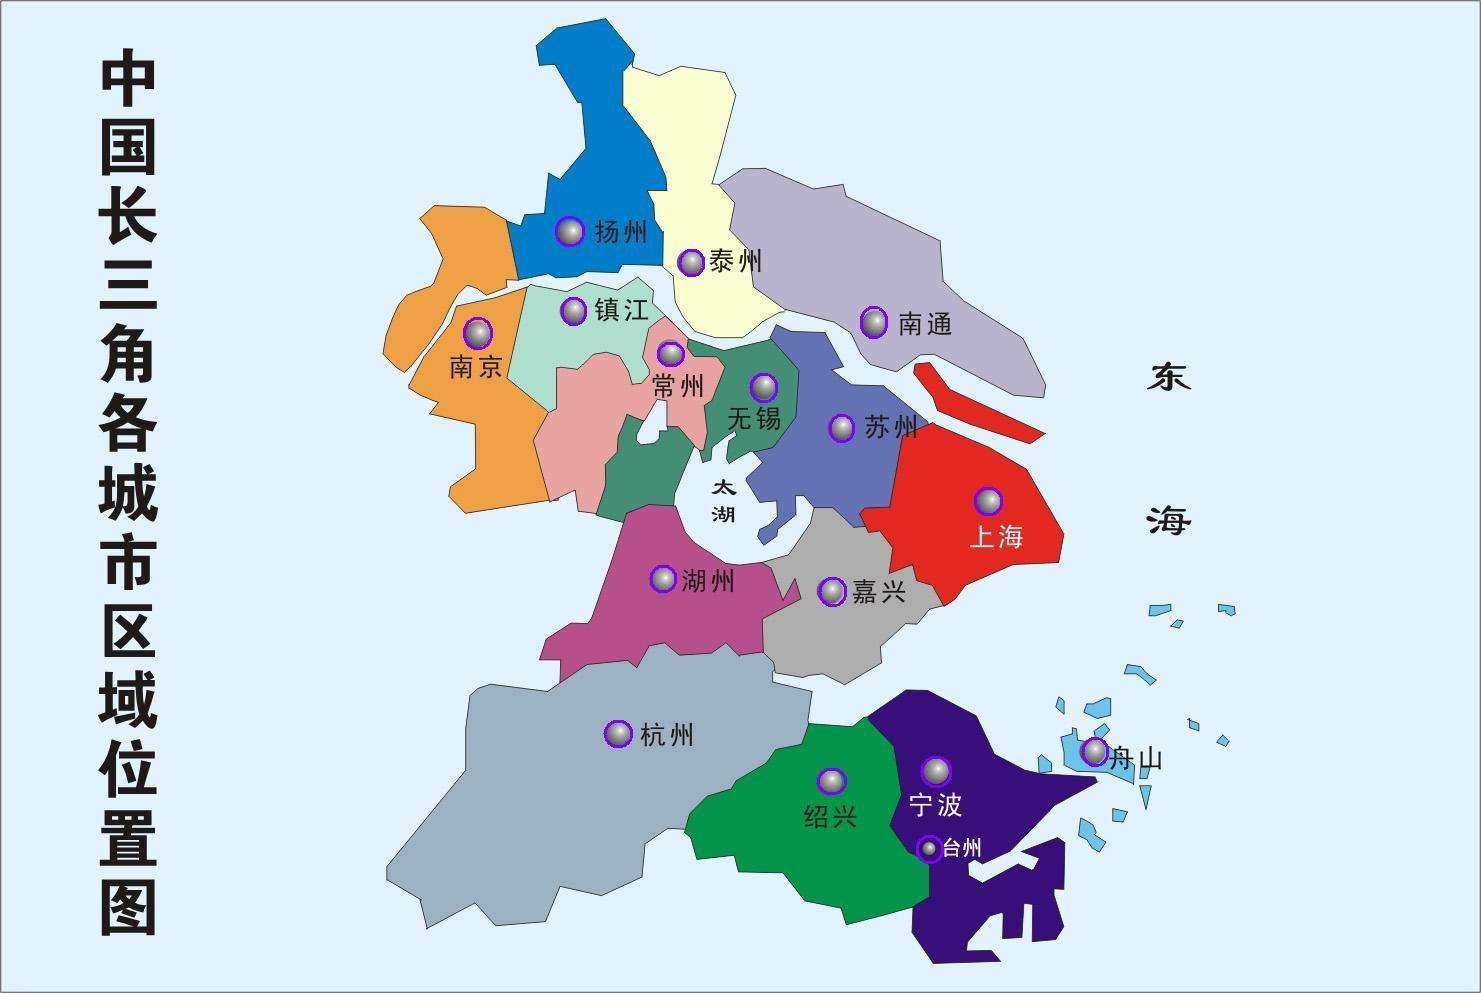 扬州融入苏南长三角核心区